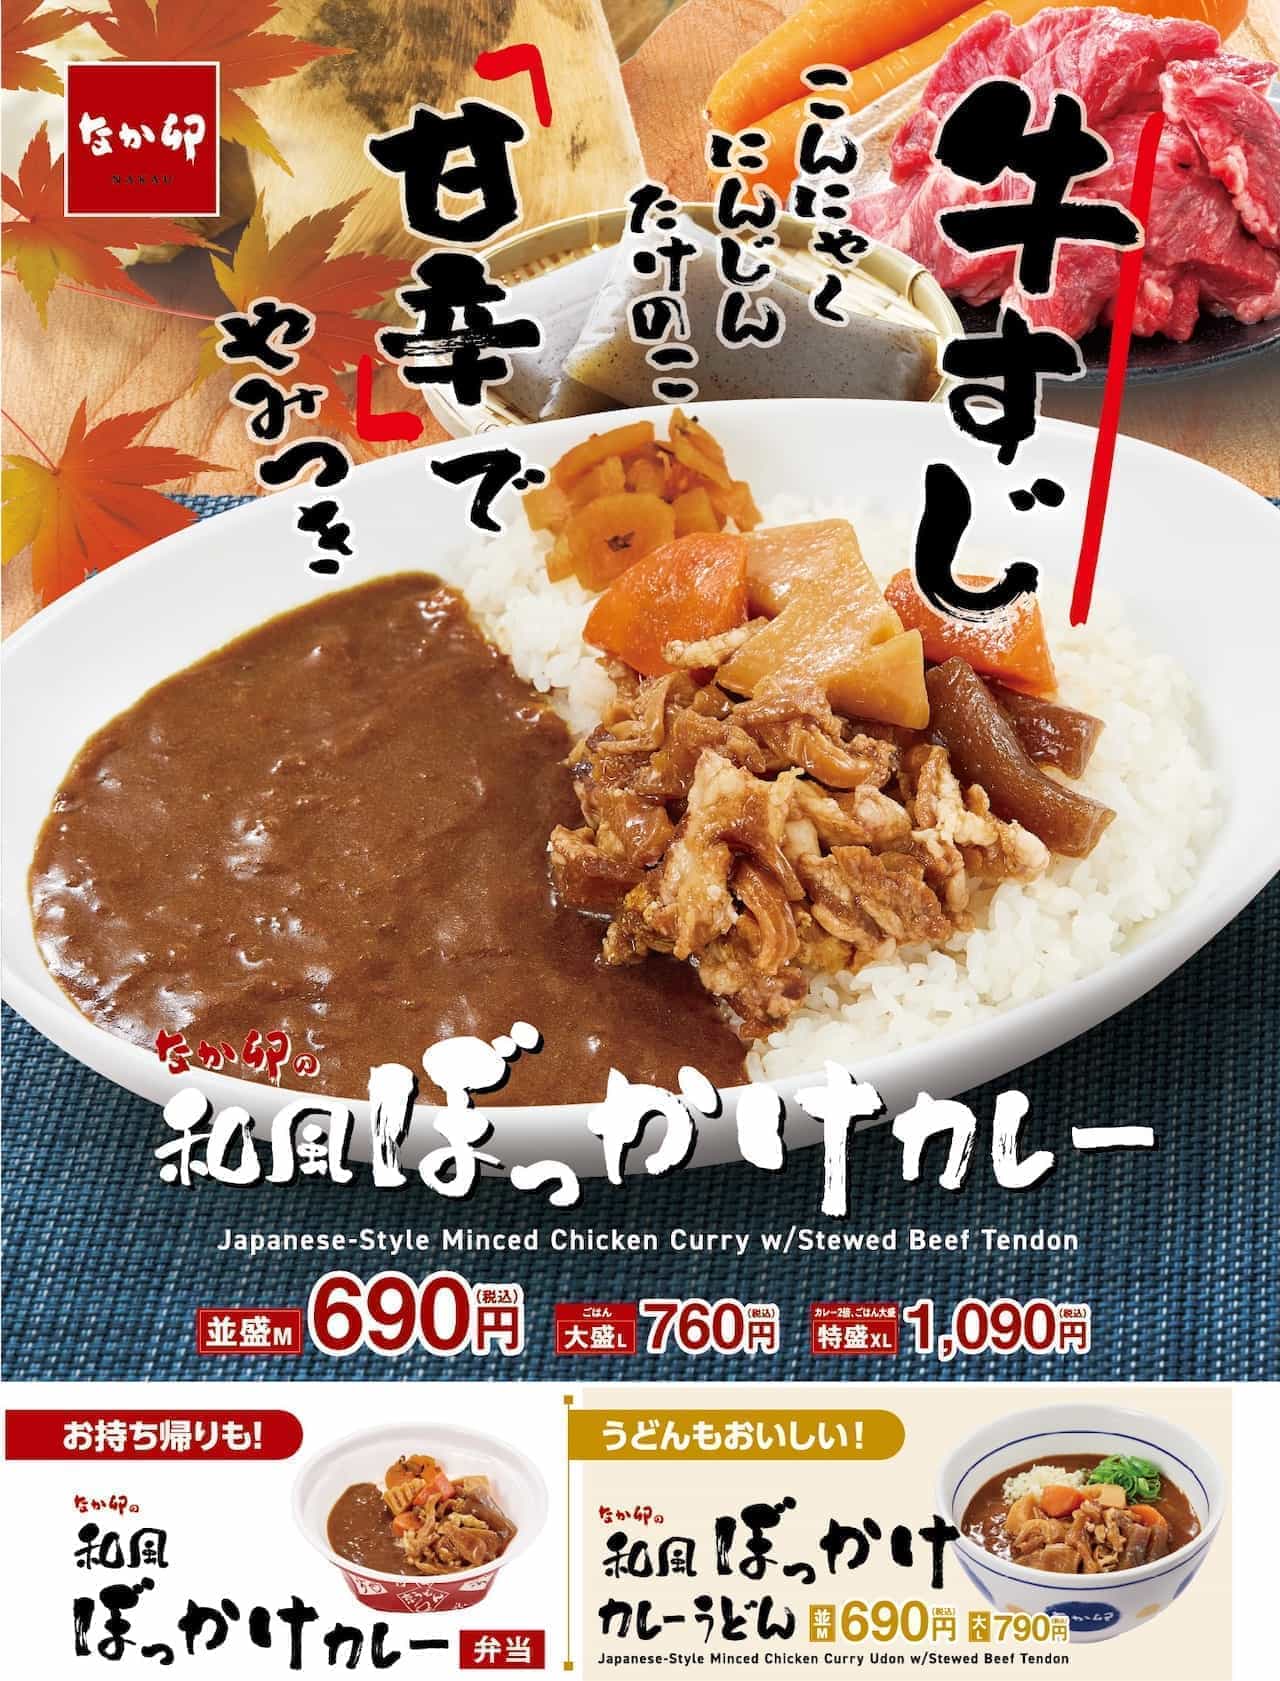 Nakau Japanese-style Bokkake Curry Japanese-style Bokkake Curry Udon